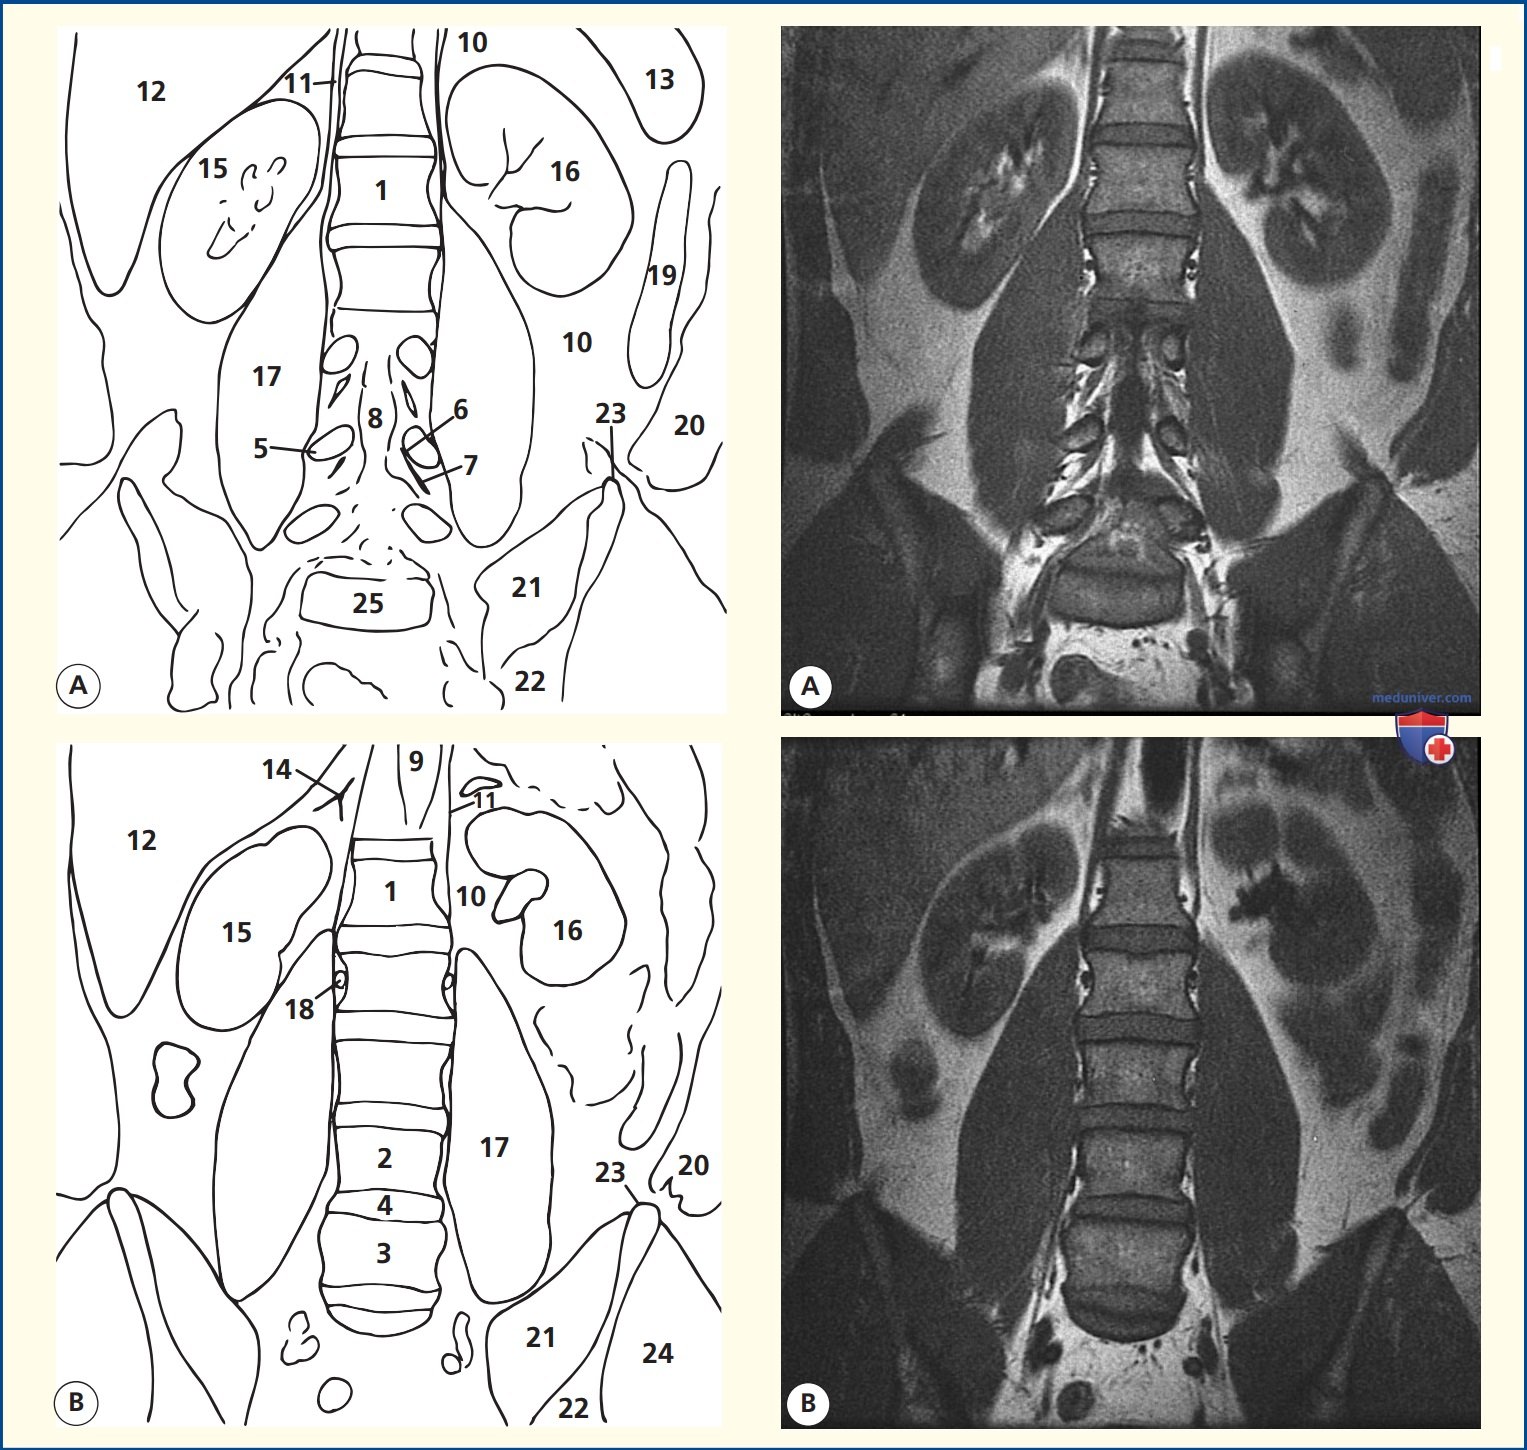 Анатомия коронального среза поясничного отдела позвоночника на магнитно-резонансной томограмме (МРТ)